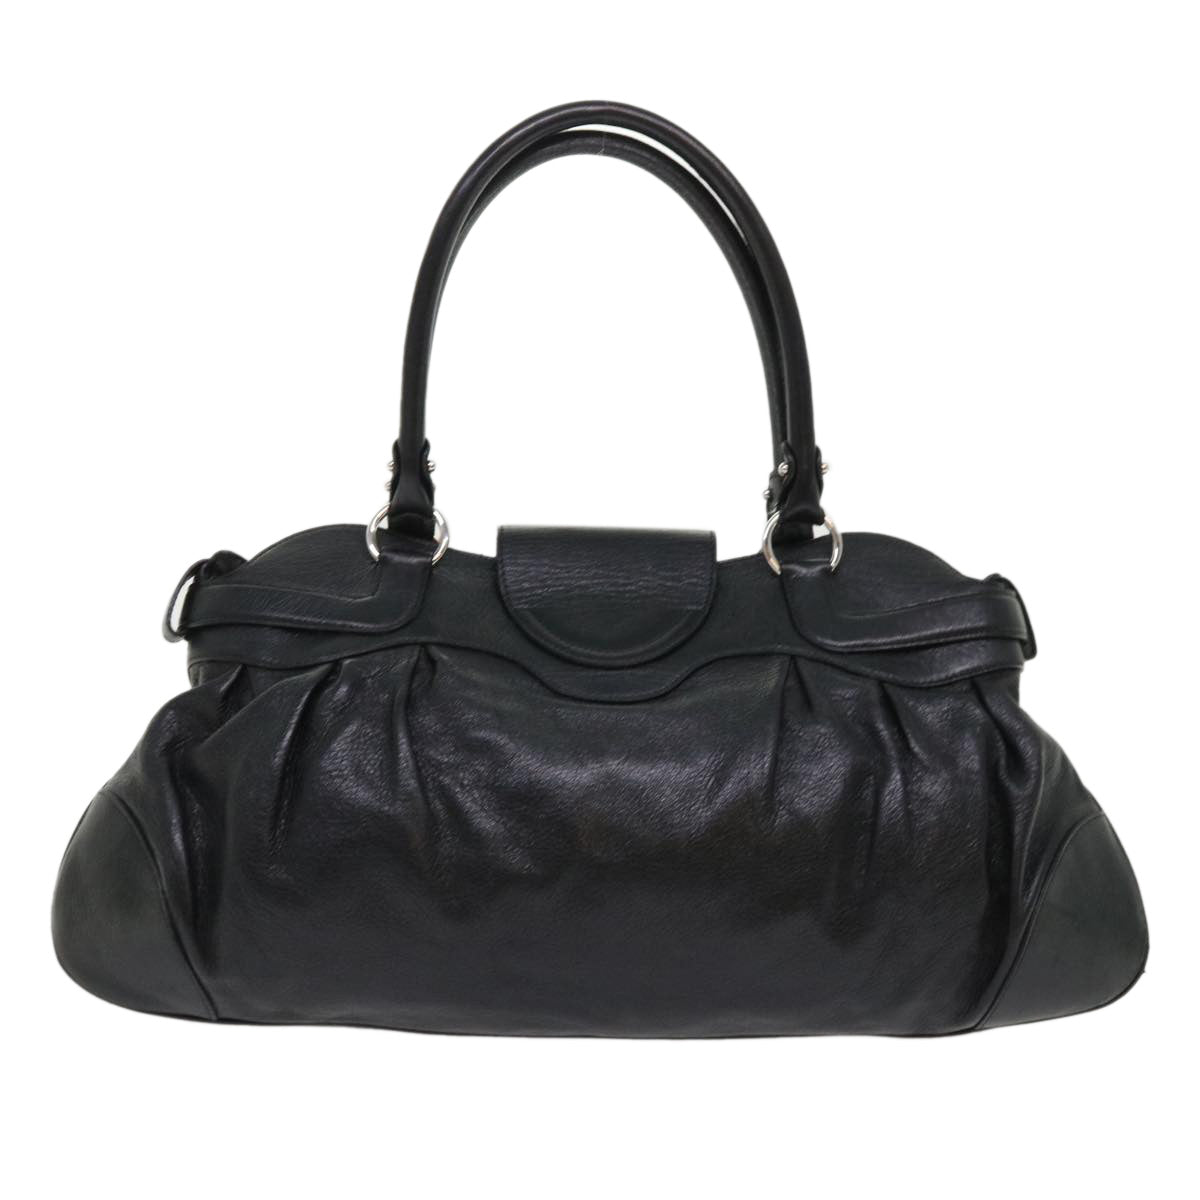 Salvatore Ferragamo Gancini Marissa Shoulder Bag Leather Black Auth 48040